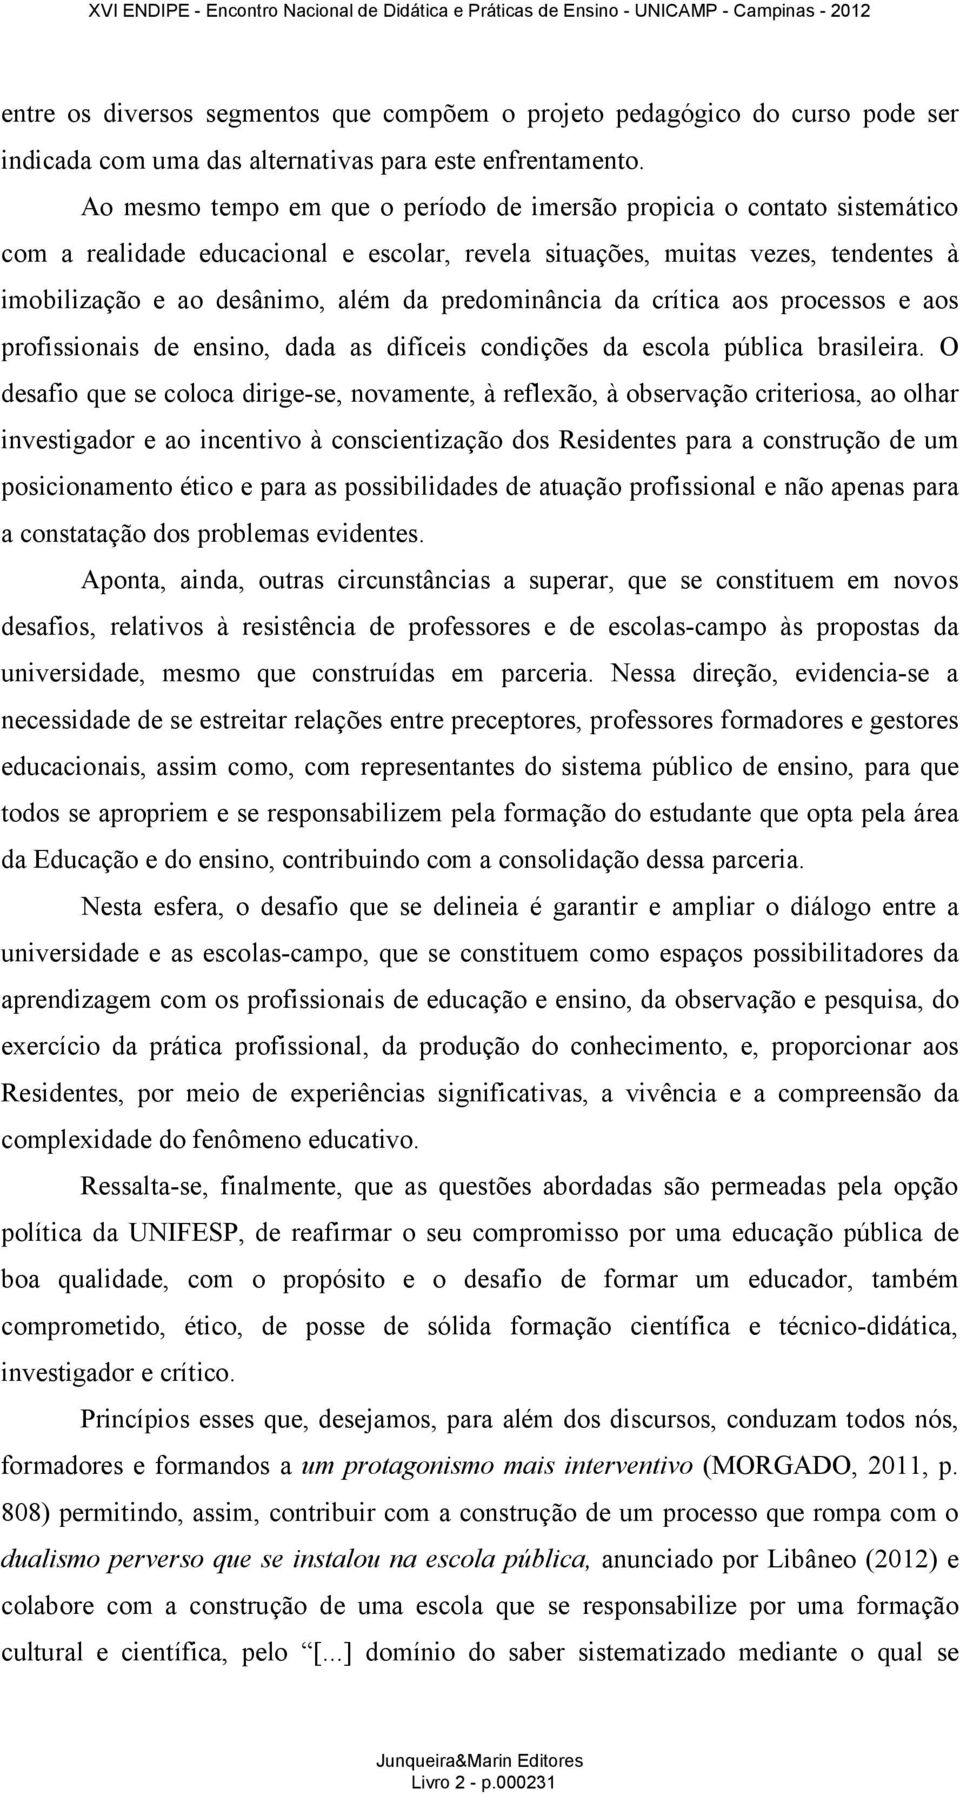 predominância da crítica aos processos e aos profissionais de ensino, dada as difíceis condições da escola pública brasileira.